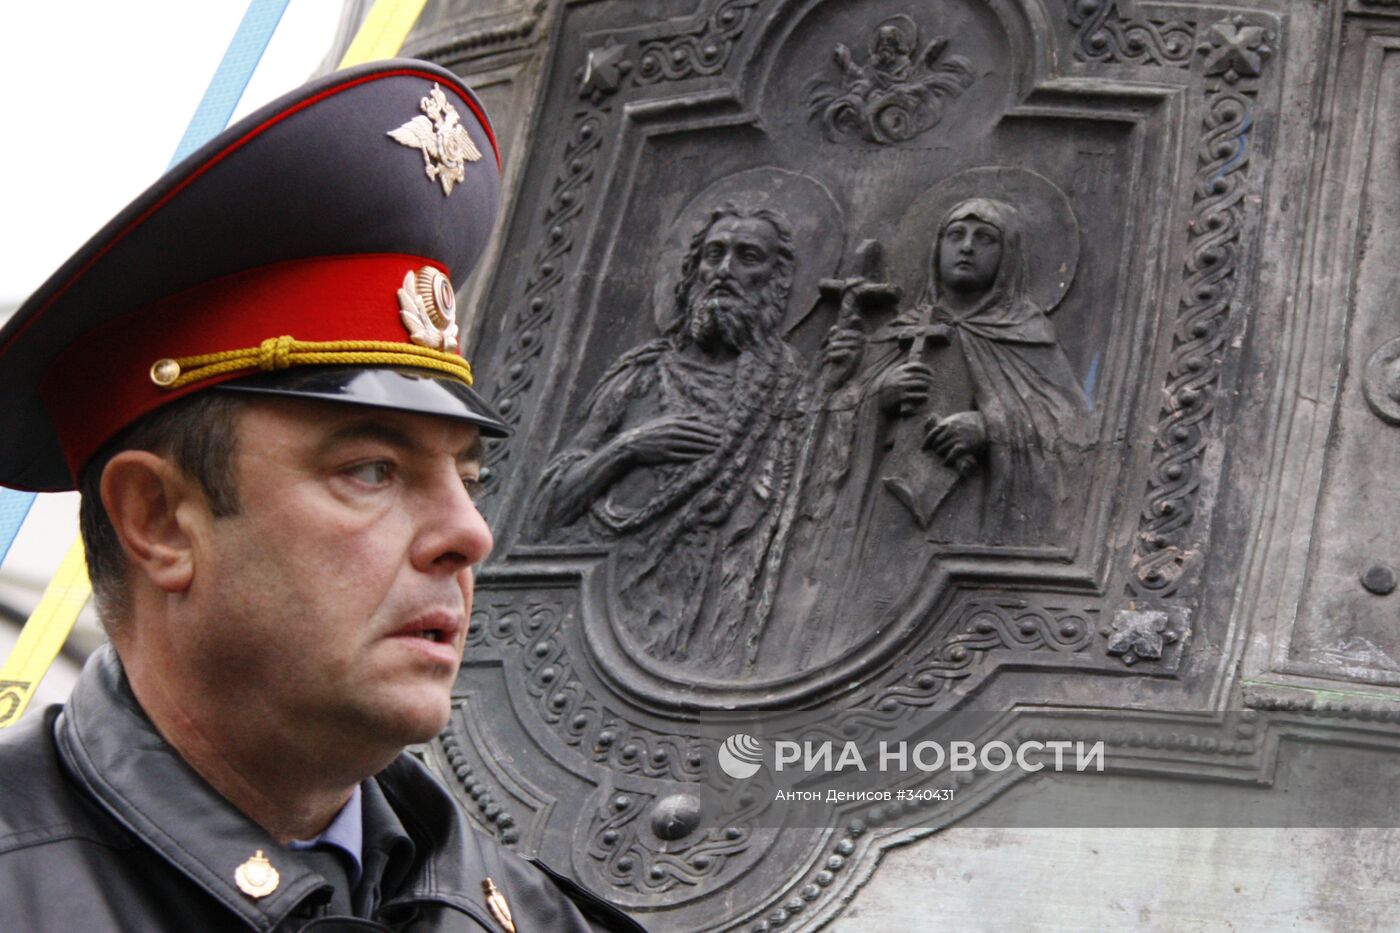 Колокола Свято-Данилова монастыря возвращены Москву